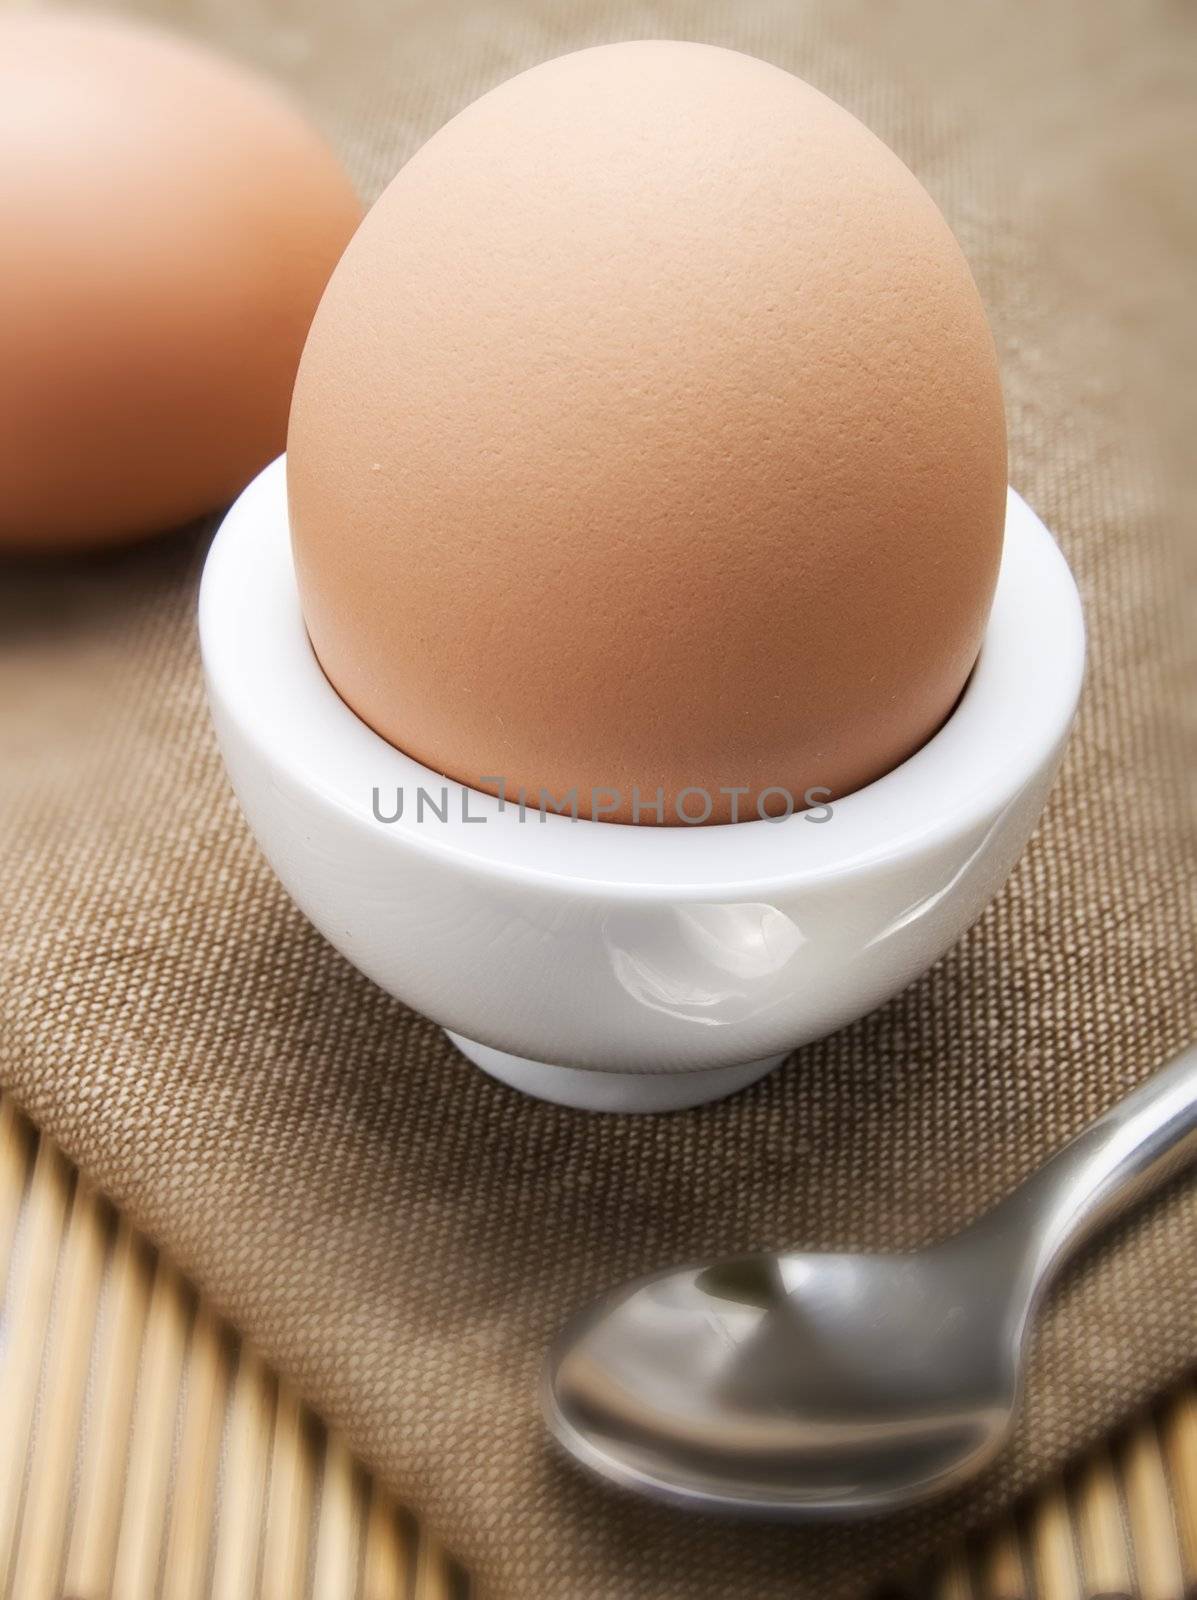 Eggs by henrischmit